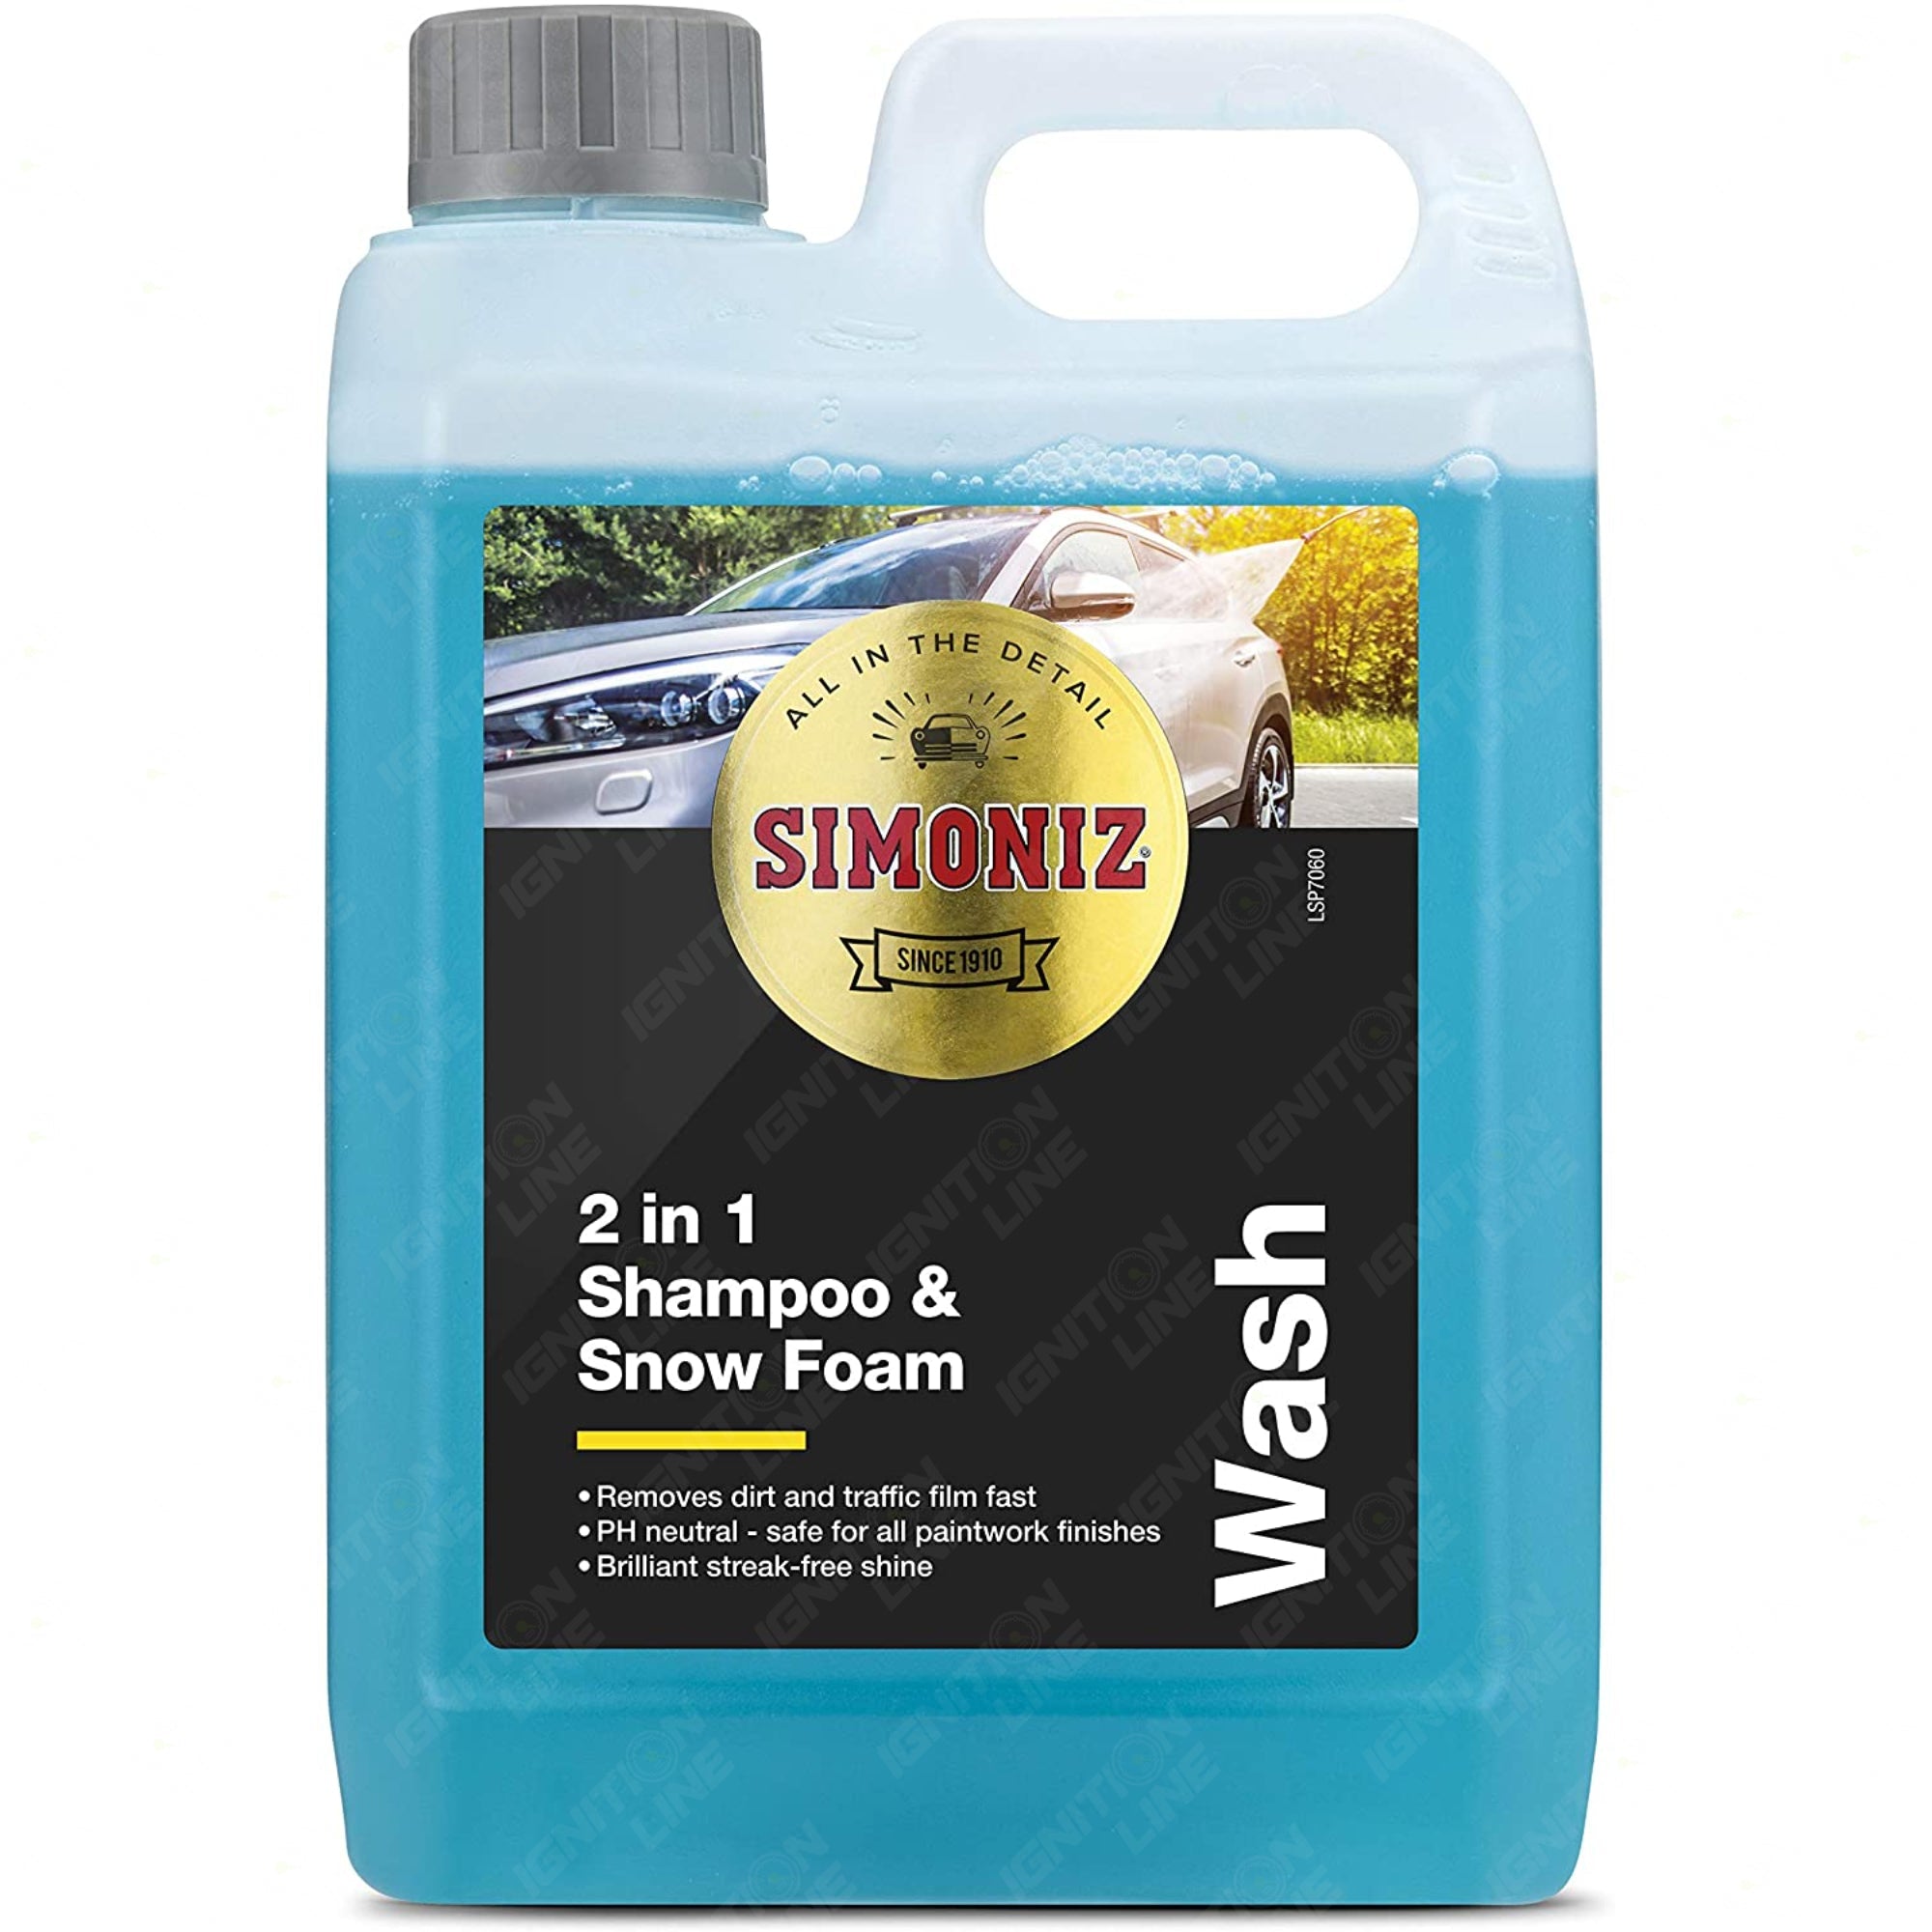 Simoniz 2 in 1 Shampoo & Snow Foam 2L